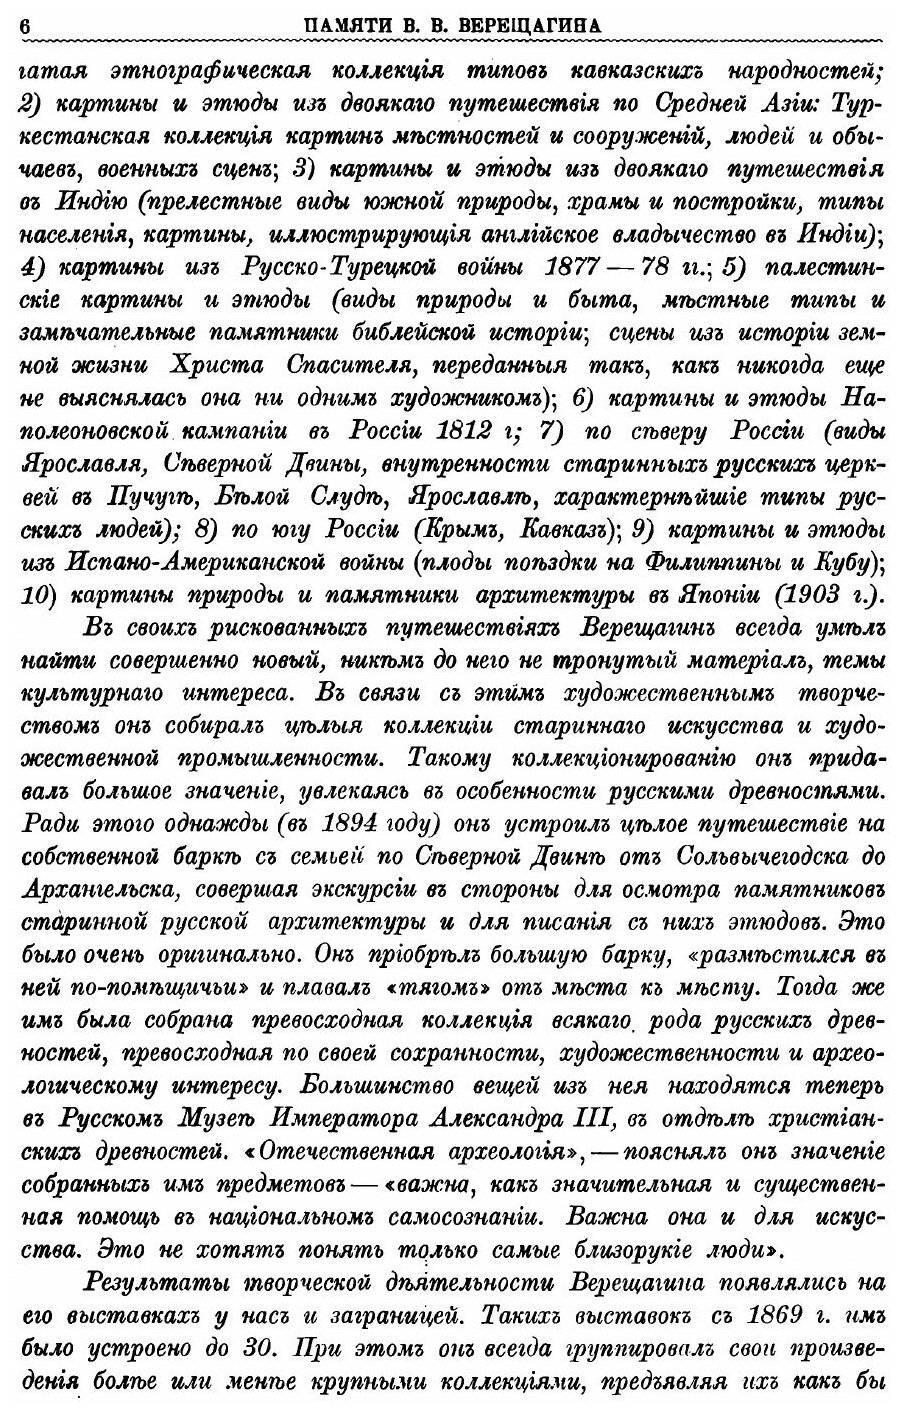 В. В. Верещагин и его произведения